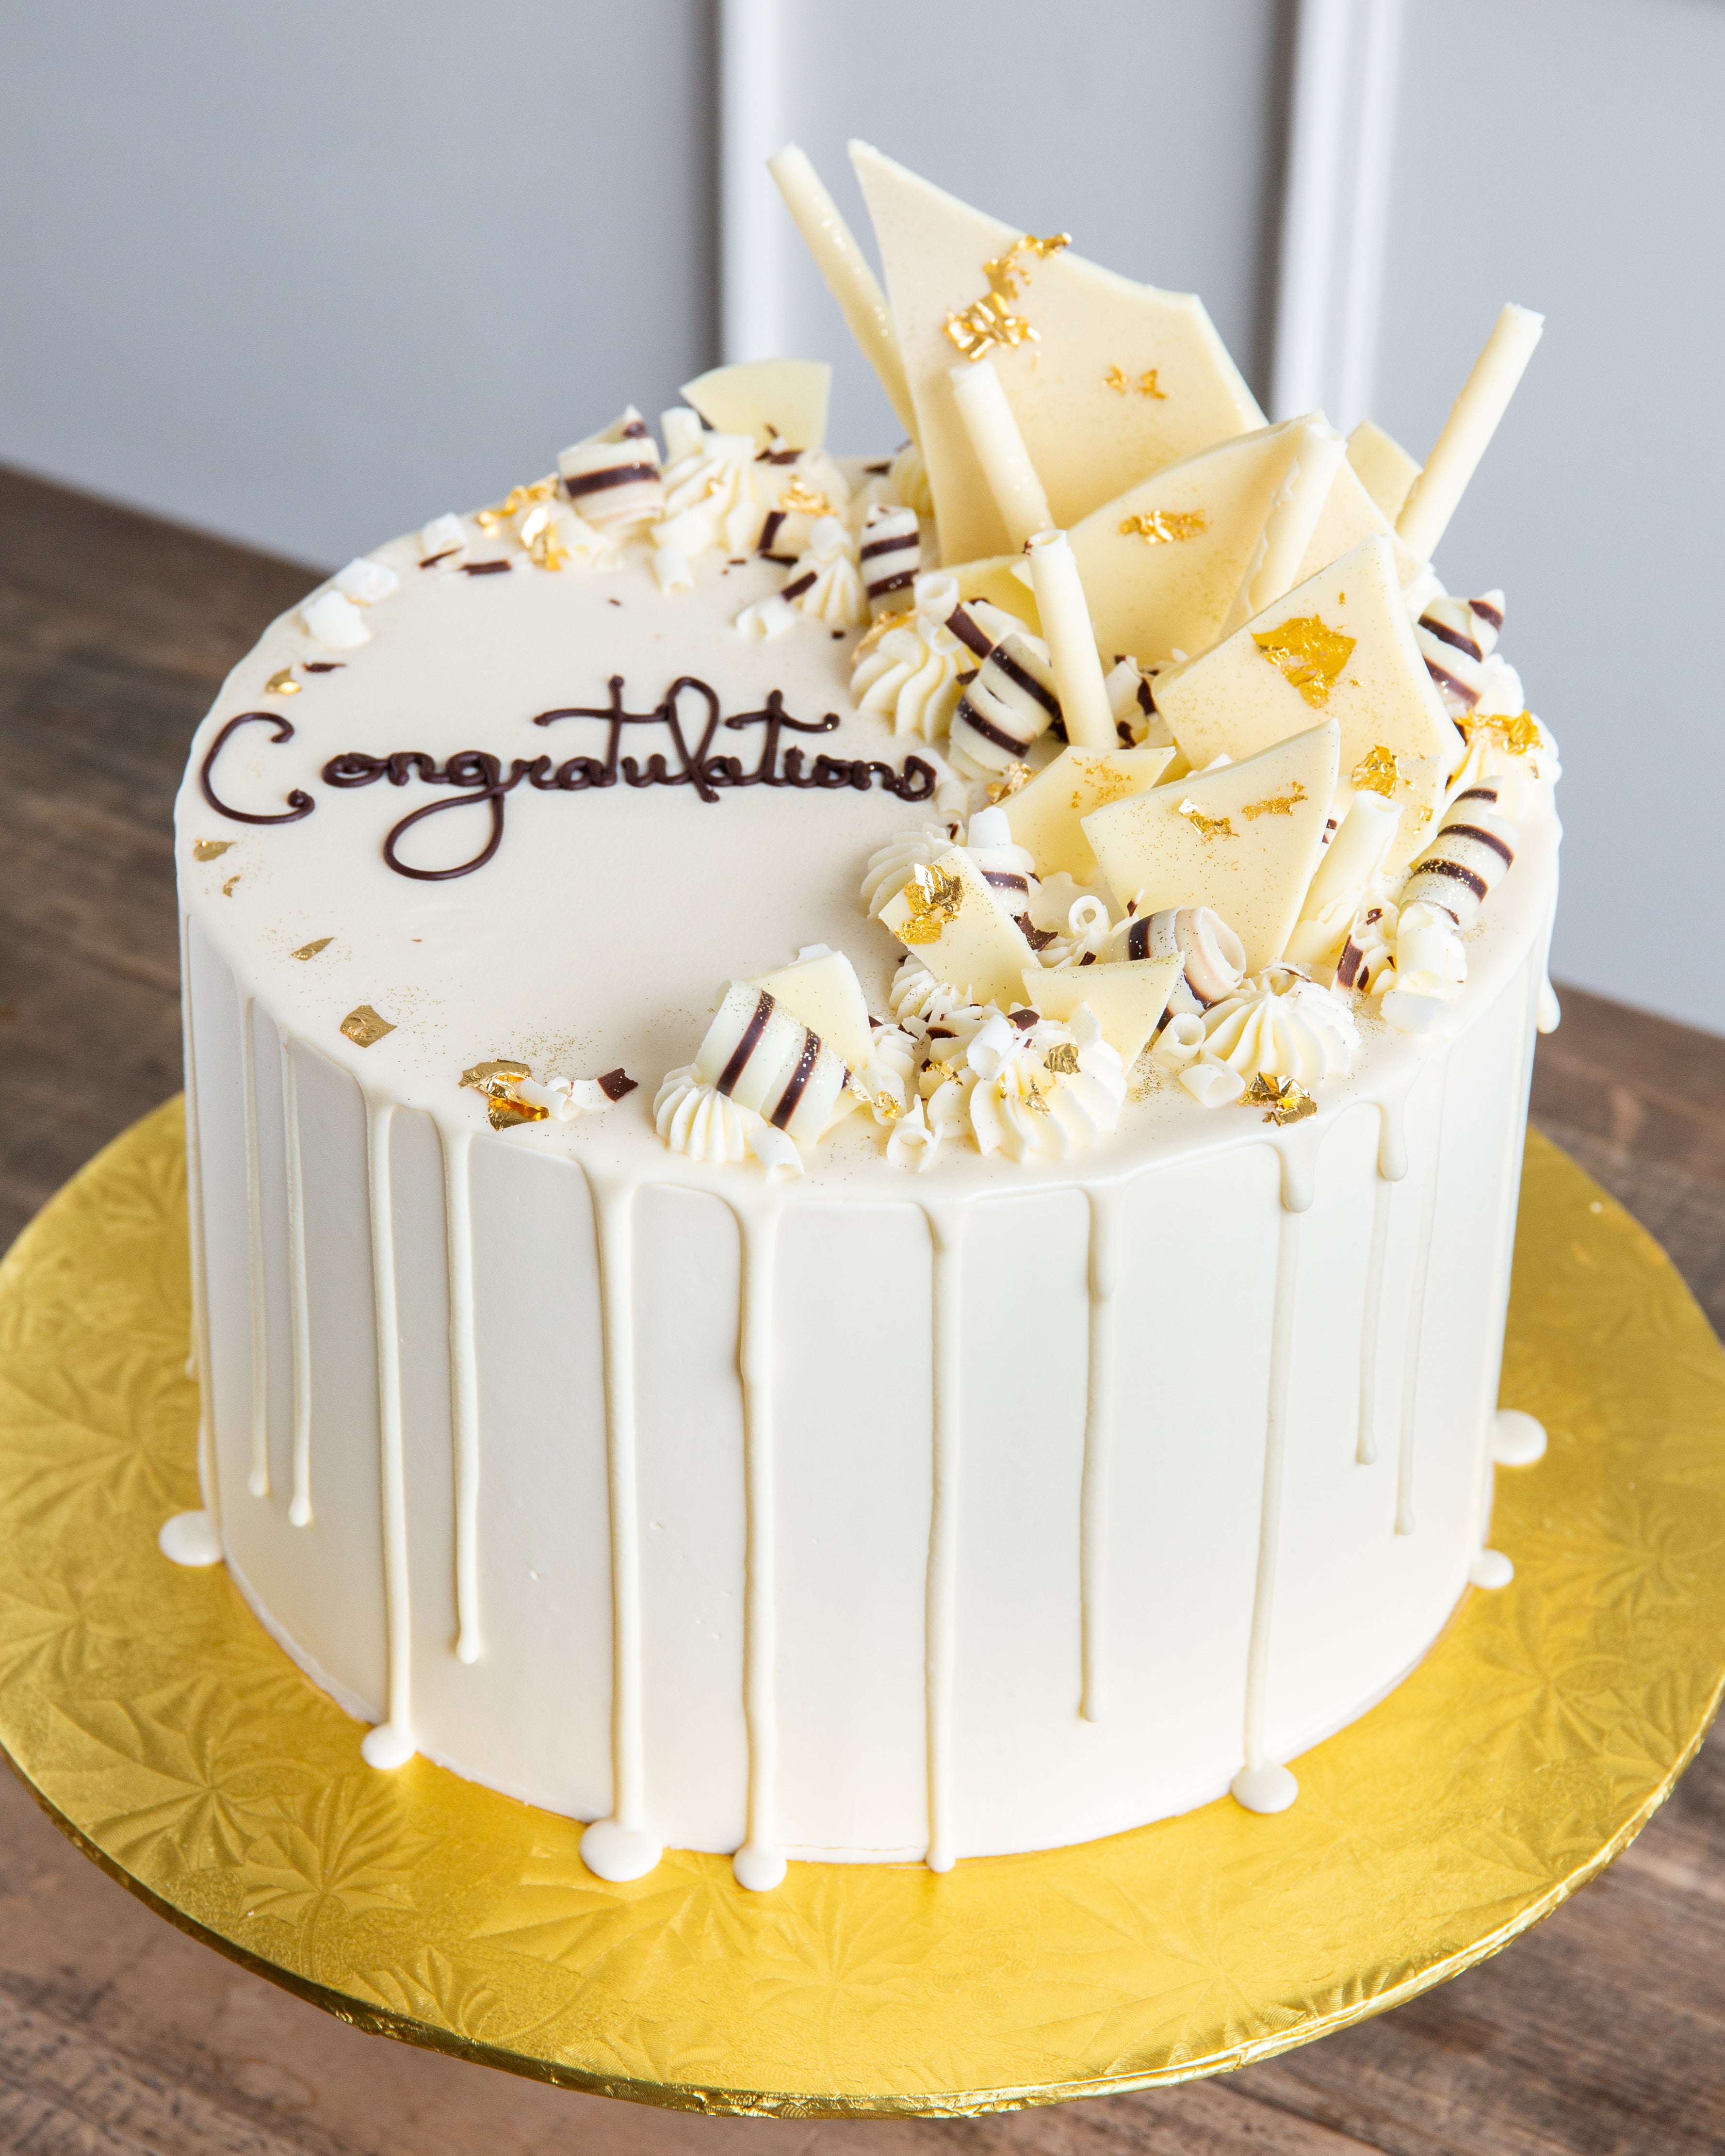 Congratulations Cake 👩‍🎓❤ | Chocolate drip cake, Graduation cakes, Congratulations  cake